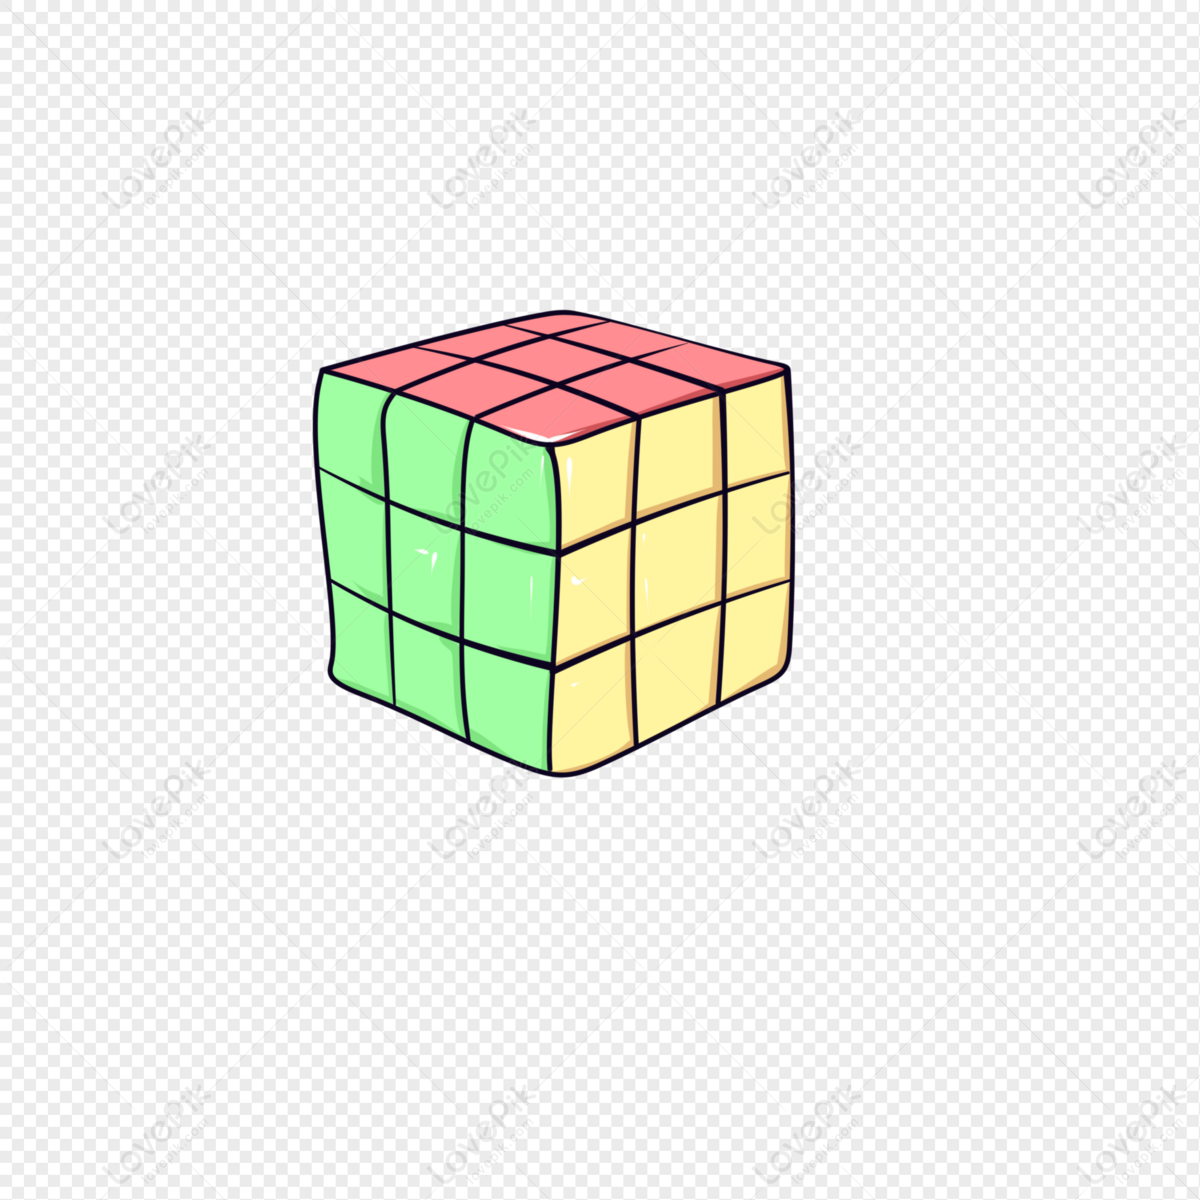 Với được hình ảnh Rubik PNG rõ ràng, bạn sẽ nhận thấy chiếc khối đầy màu sắc hơn bao giờ hết! Bạn có thể sử dụng hình ảnh này để tạo ra những sản phẩm sáng tạo của riêng mình.